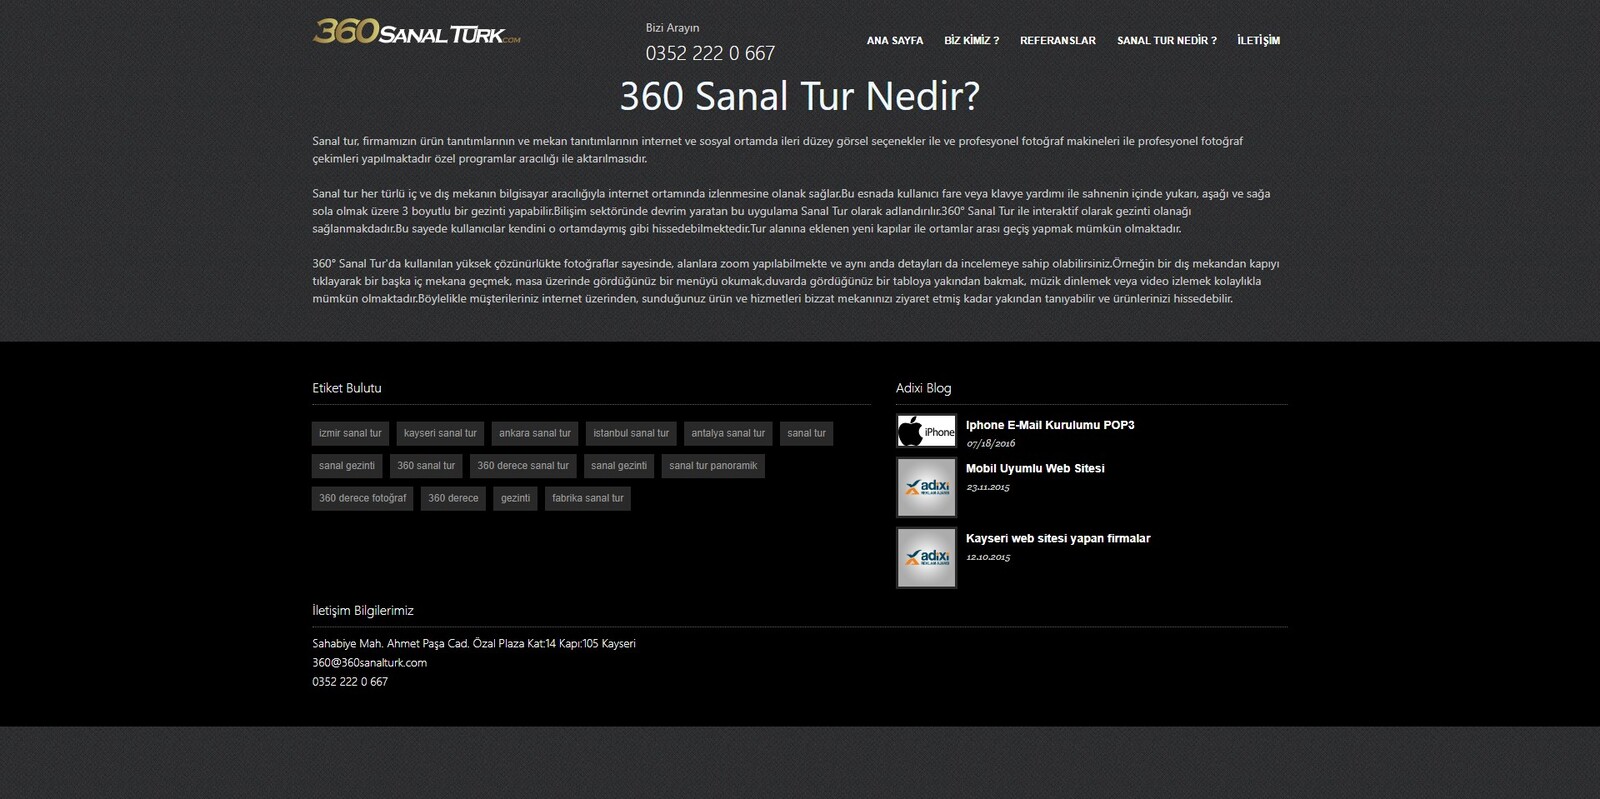 360 Sanal Türk